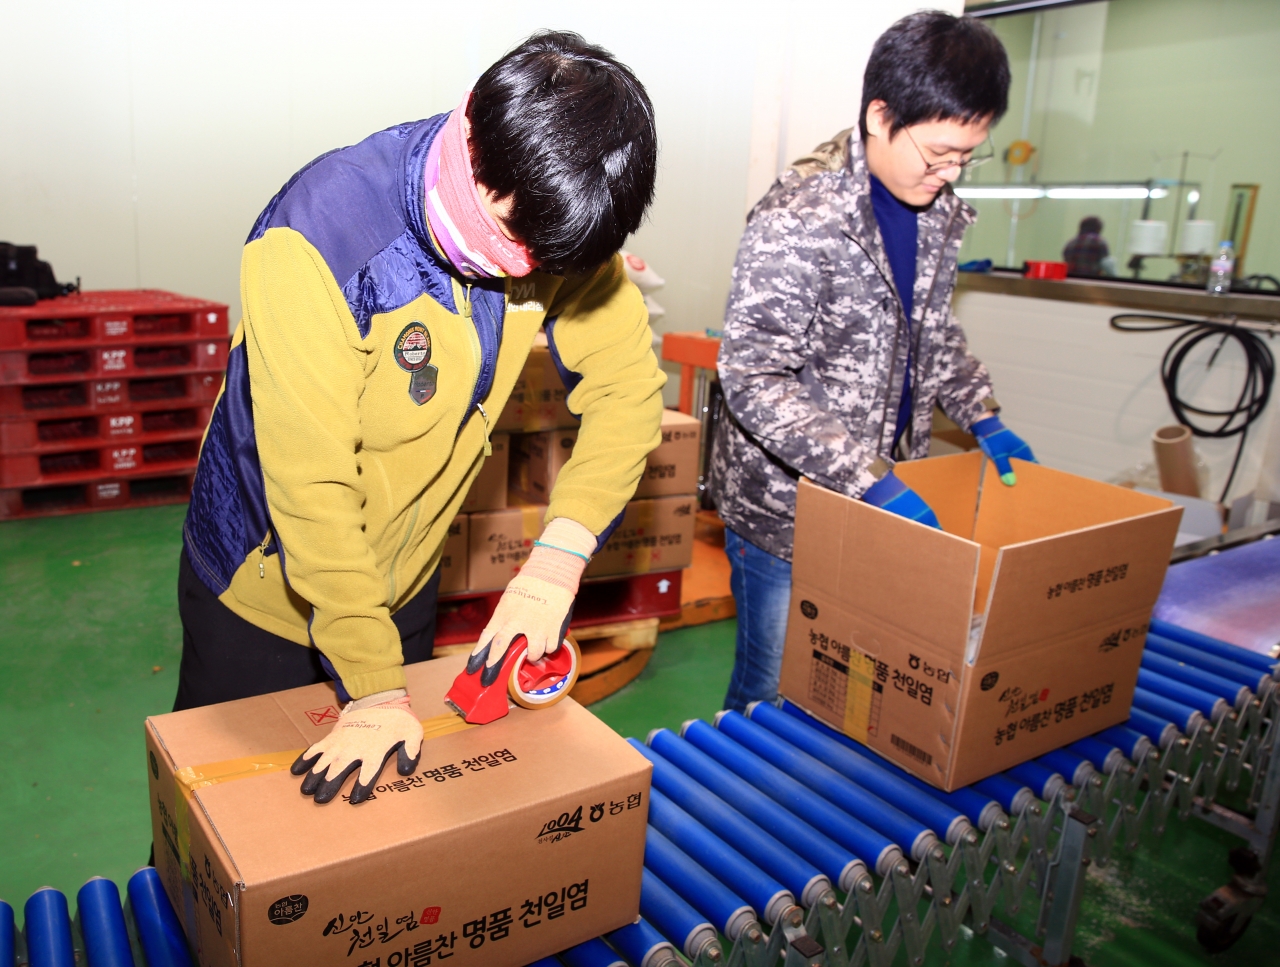 북신안농협에서 근무하는 김진규‧홍신우(사진 왼쪽) 씨가 천일염 제품을 포장하고 있으며, 김명재 씨가 사무업무에 열중하고 있다.